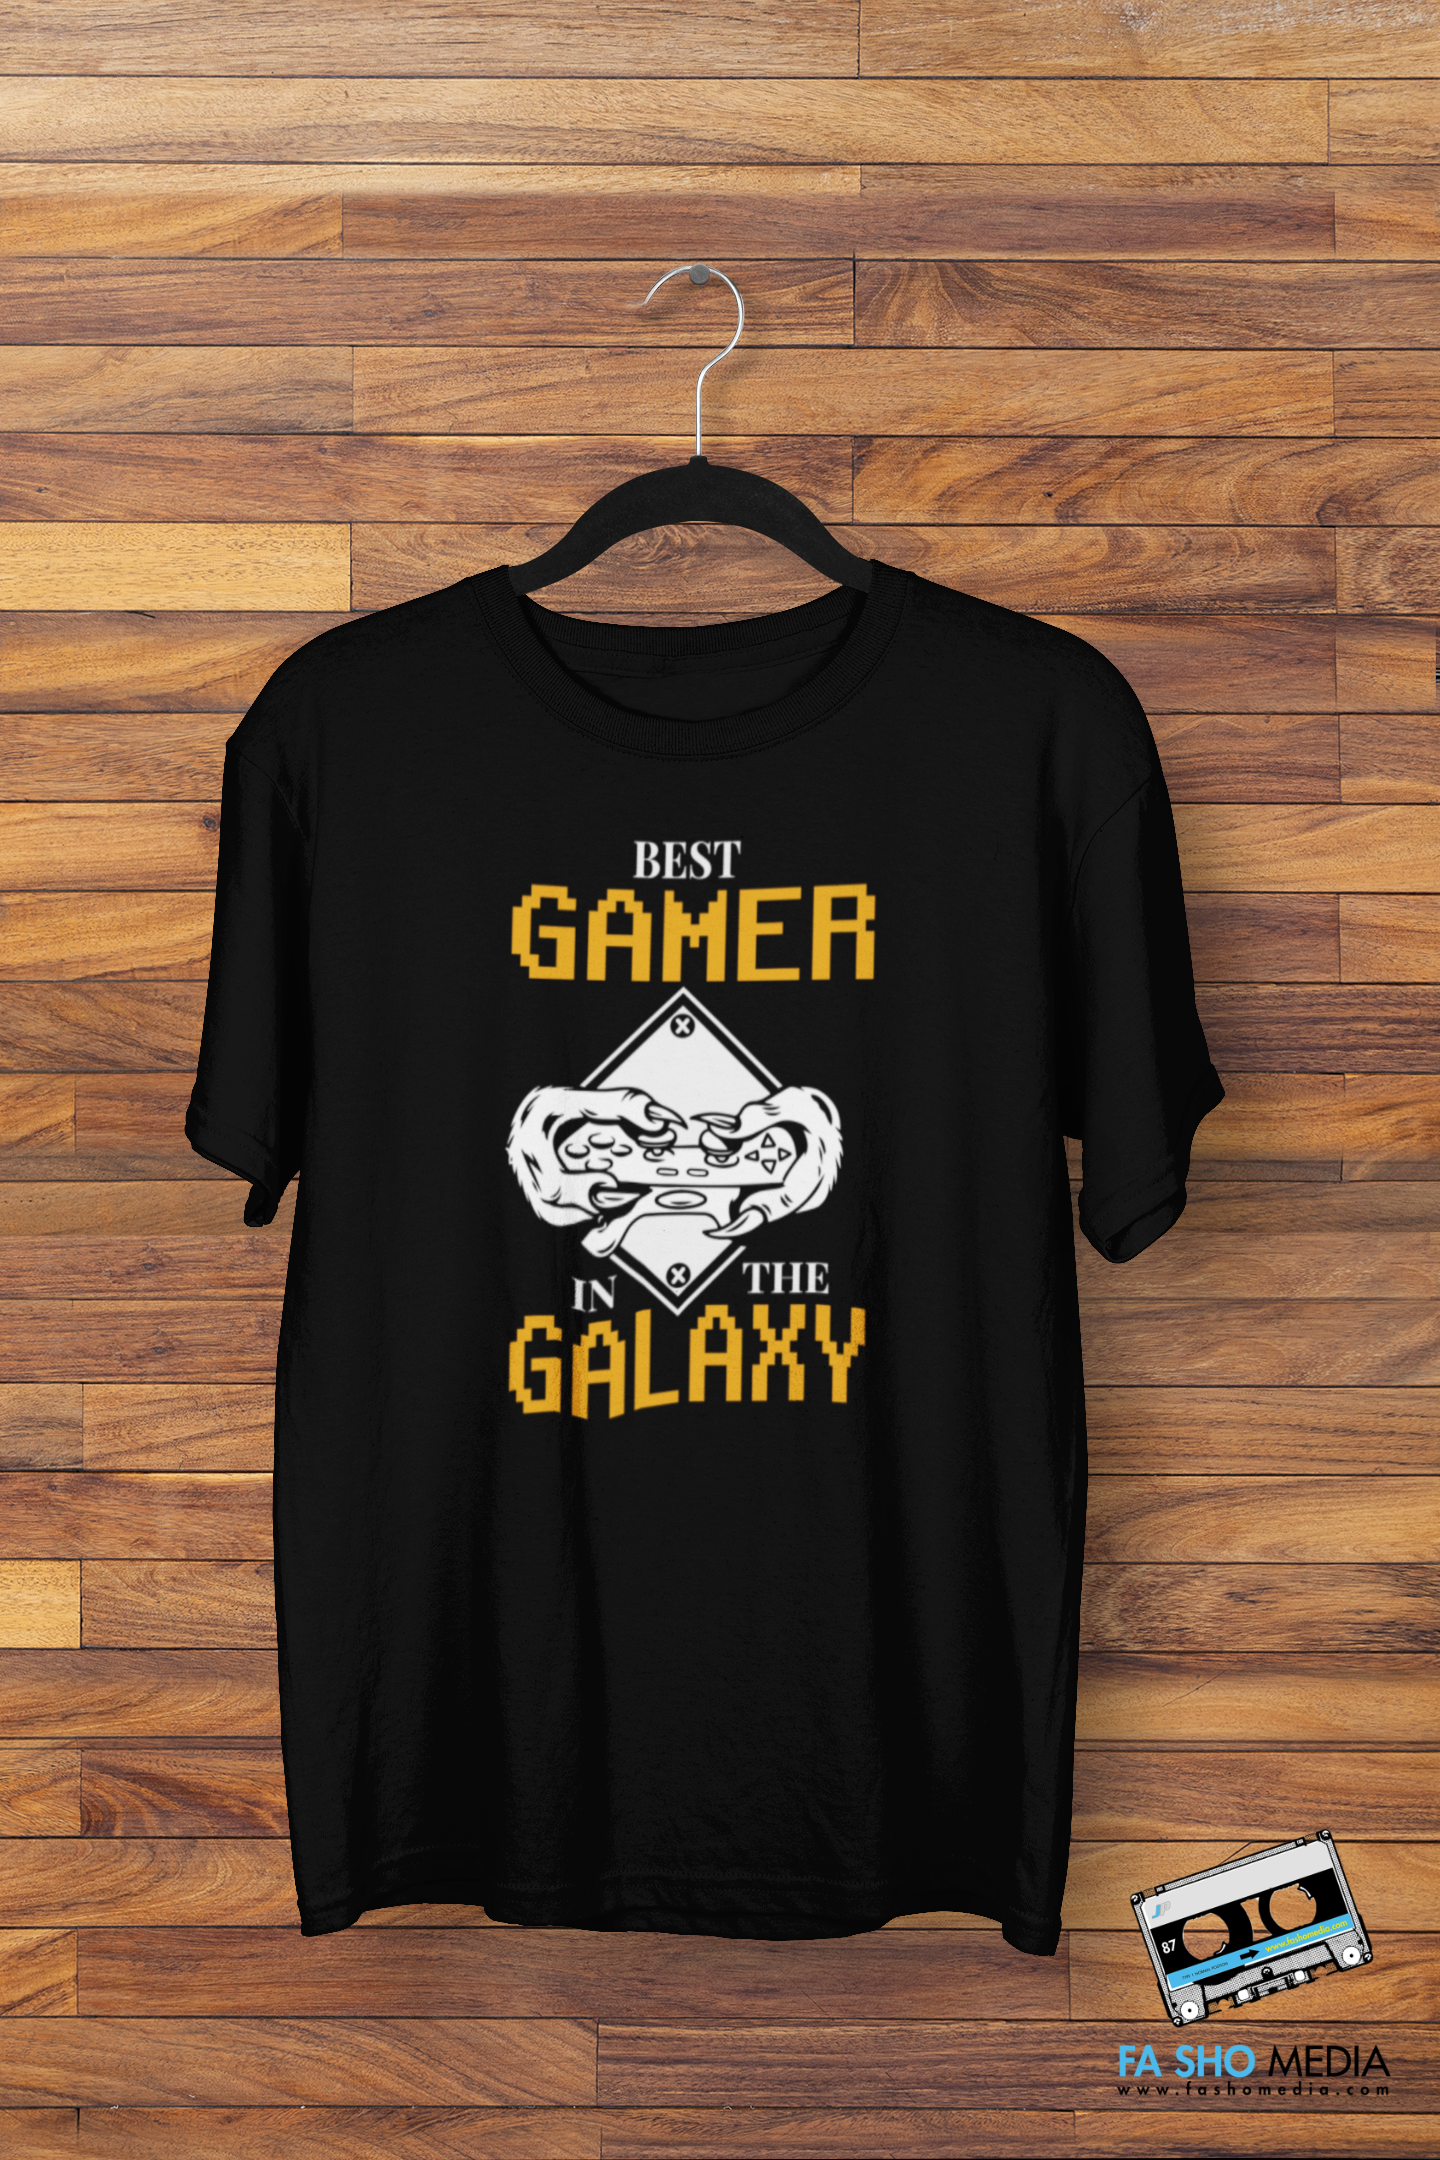 Best Gamer Shirt (Men's)